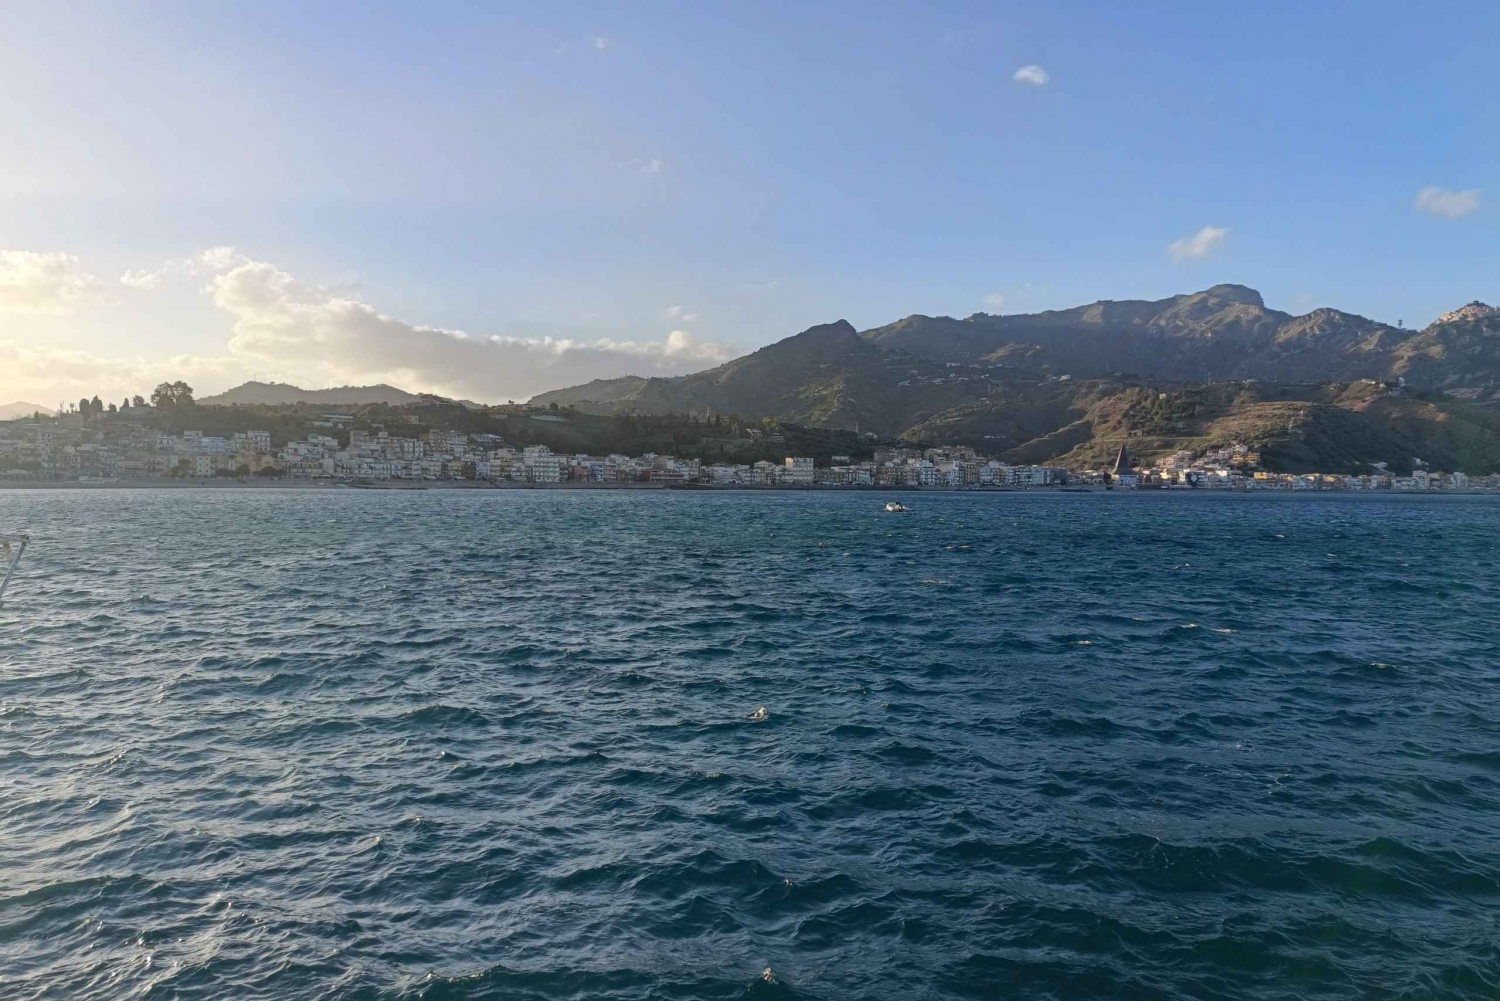 Gite in barca con osservazione dei delfini Taormina Giardini Naxos